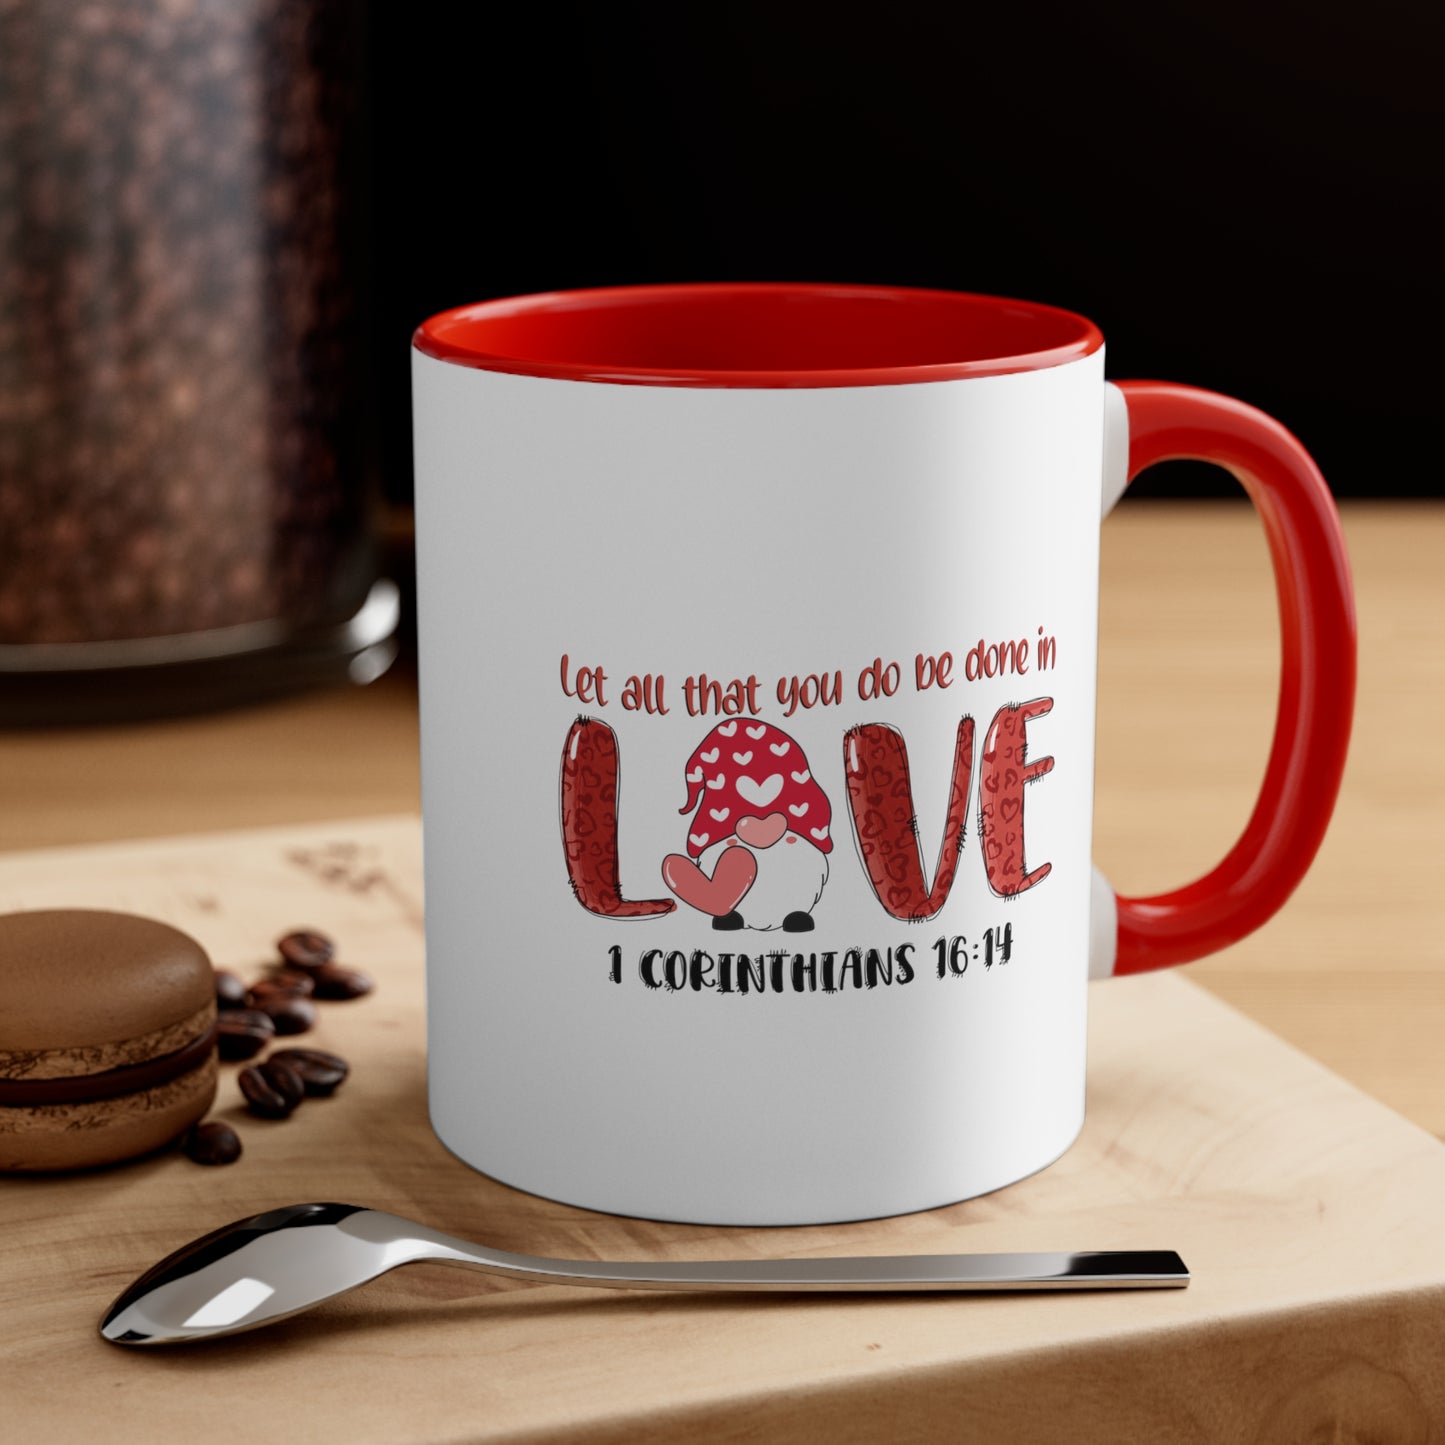 Let all you do - Accent Coffee Mug, 11oz